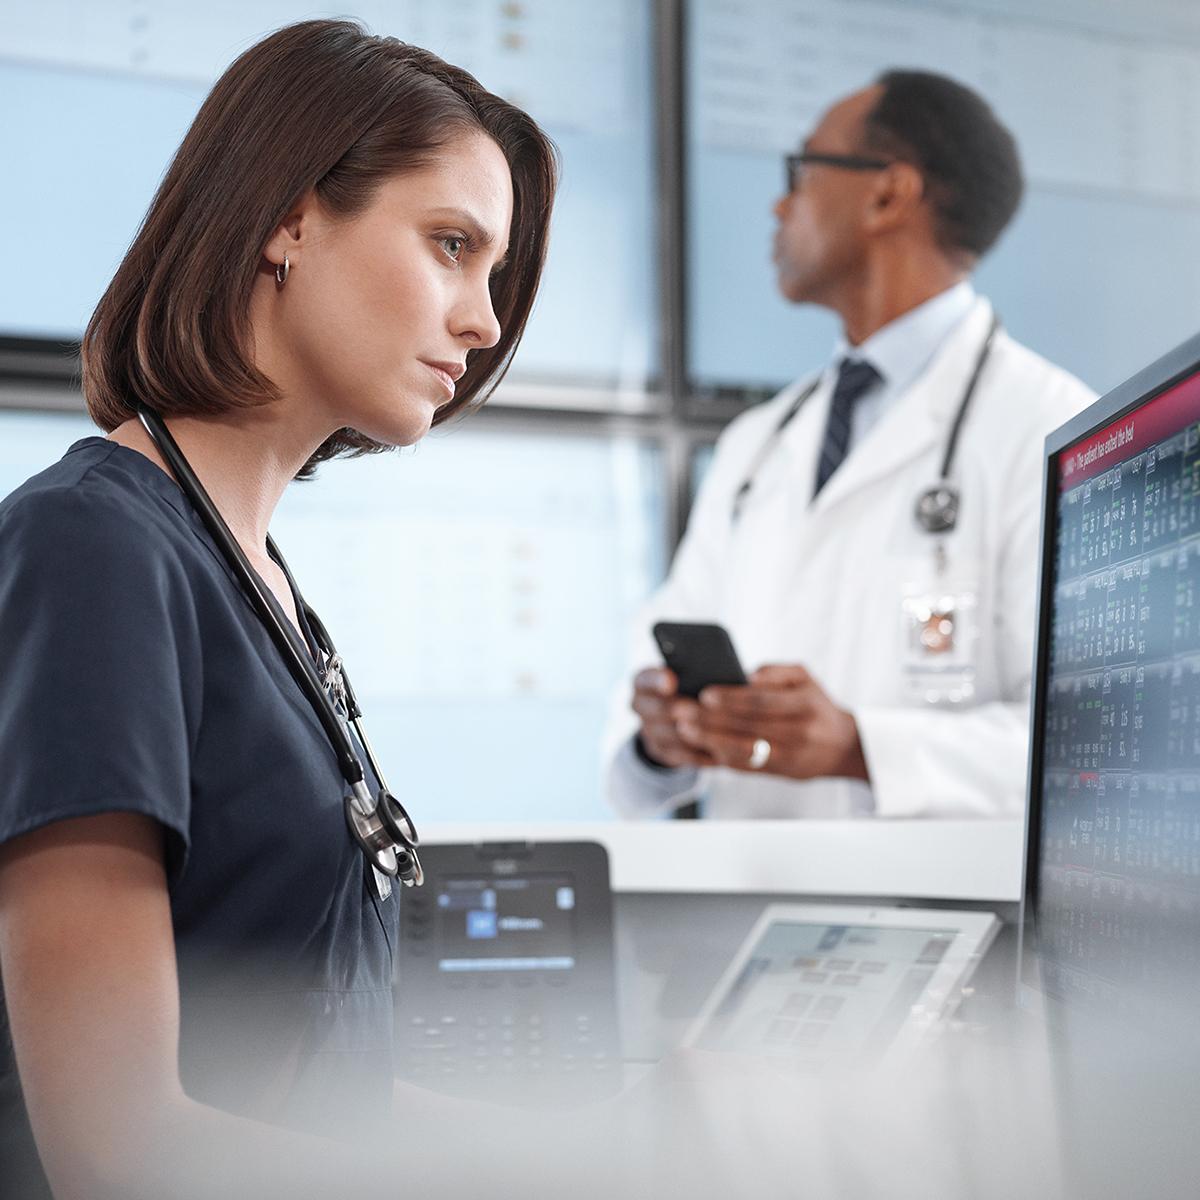 พยาบาลสามารถใช้ศูนย์ควบคุมกลาง Connex Central Station จากคอมพิวเตอร์ และแพทย์ในพื้นที่ยังสามารถเชื่อมต่อจากสมาร์ทโฟนได้